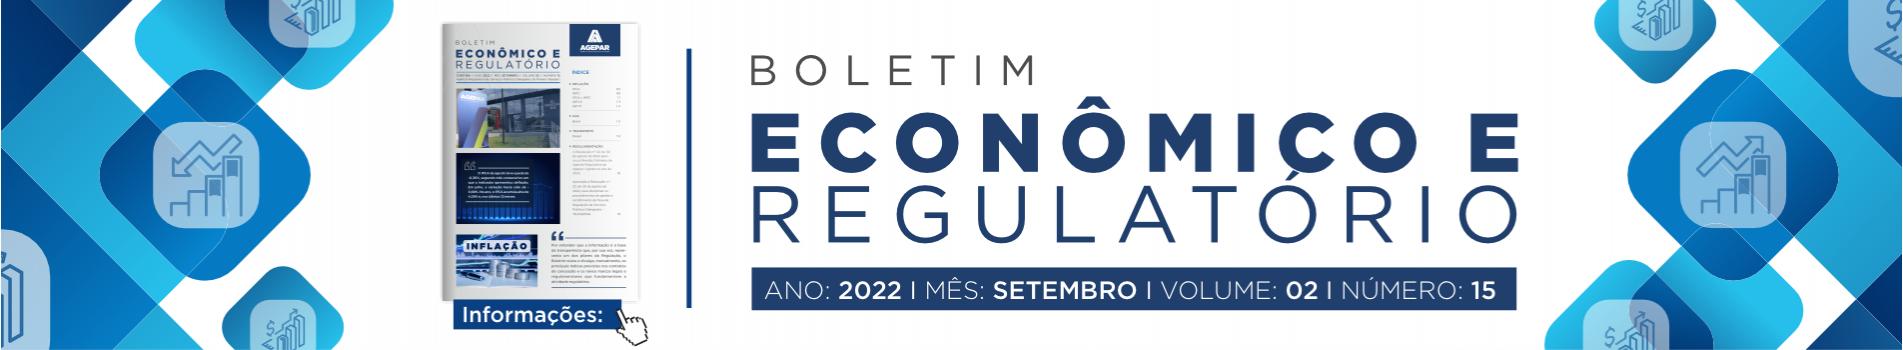 Boletim Econômico e Regulatório número 15 - setembro 2022